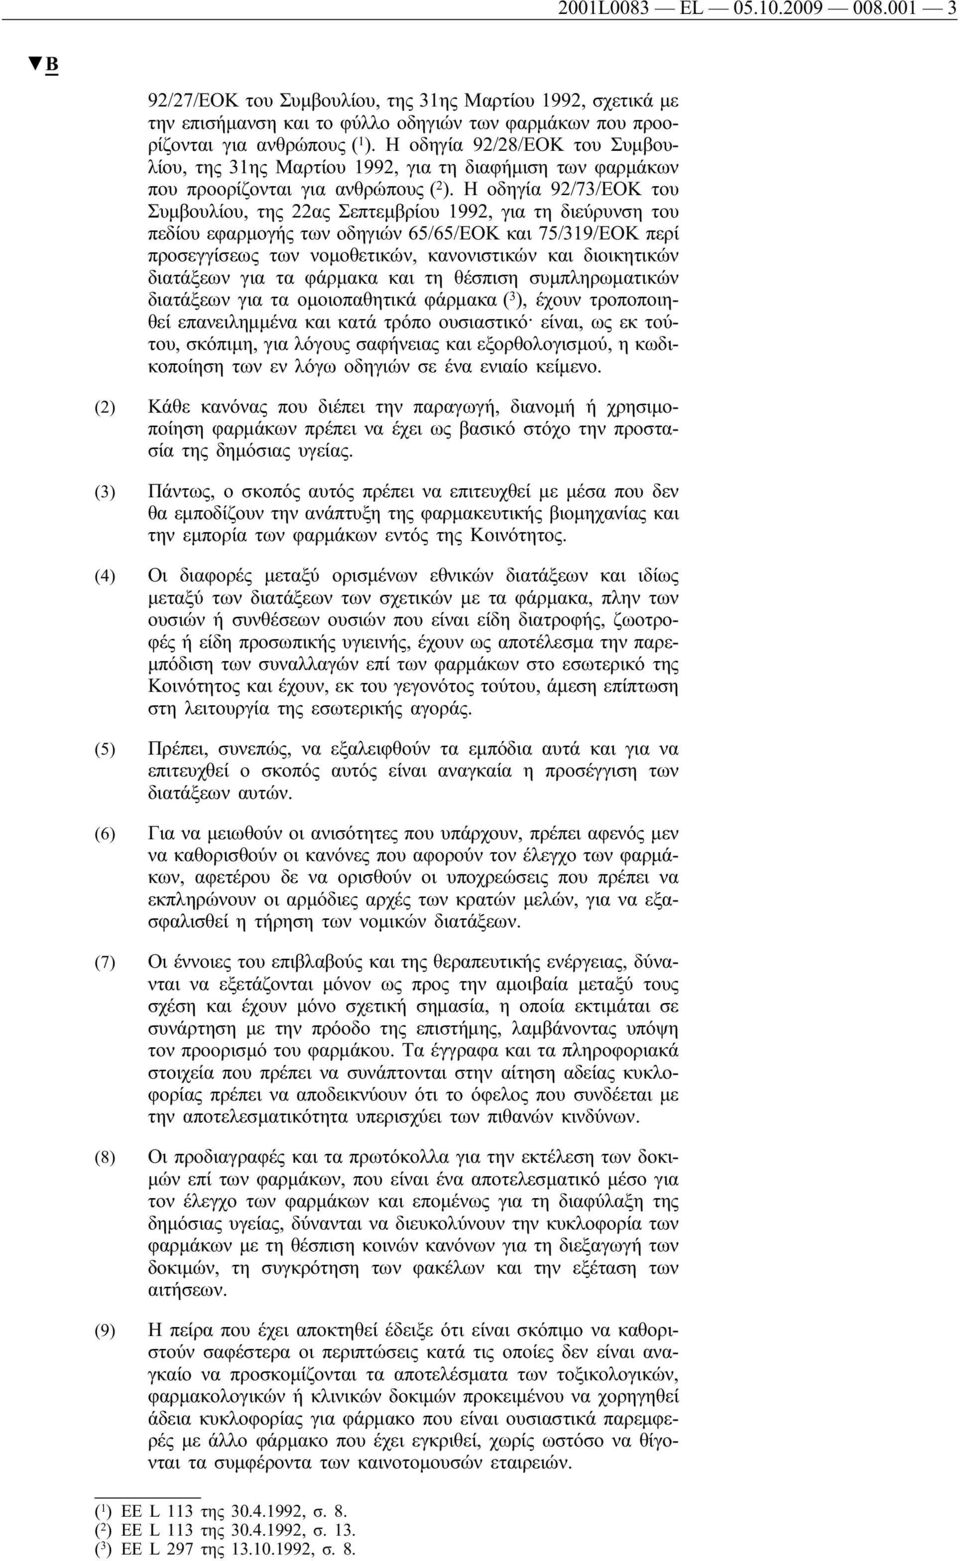 Η οδηγία 92/73/ΕΟΚ του Συμβουλίου, της 22ας Σεπτεμβρίου 1992, για τη διεύρυνση του πεδίου εφαρμογής των οδηγιών 65/65/ΕΟΚ και 75/319/ΕΟΚ περί προσεγγίσεως των νομοθετικών, κανονιστικών και